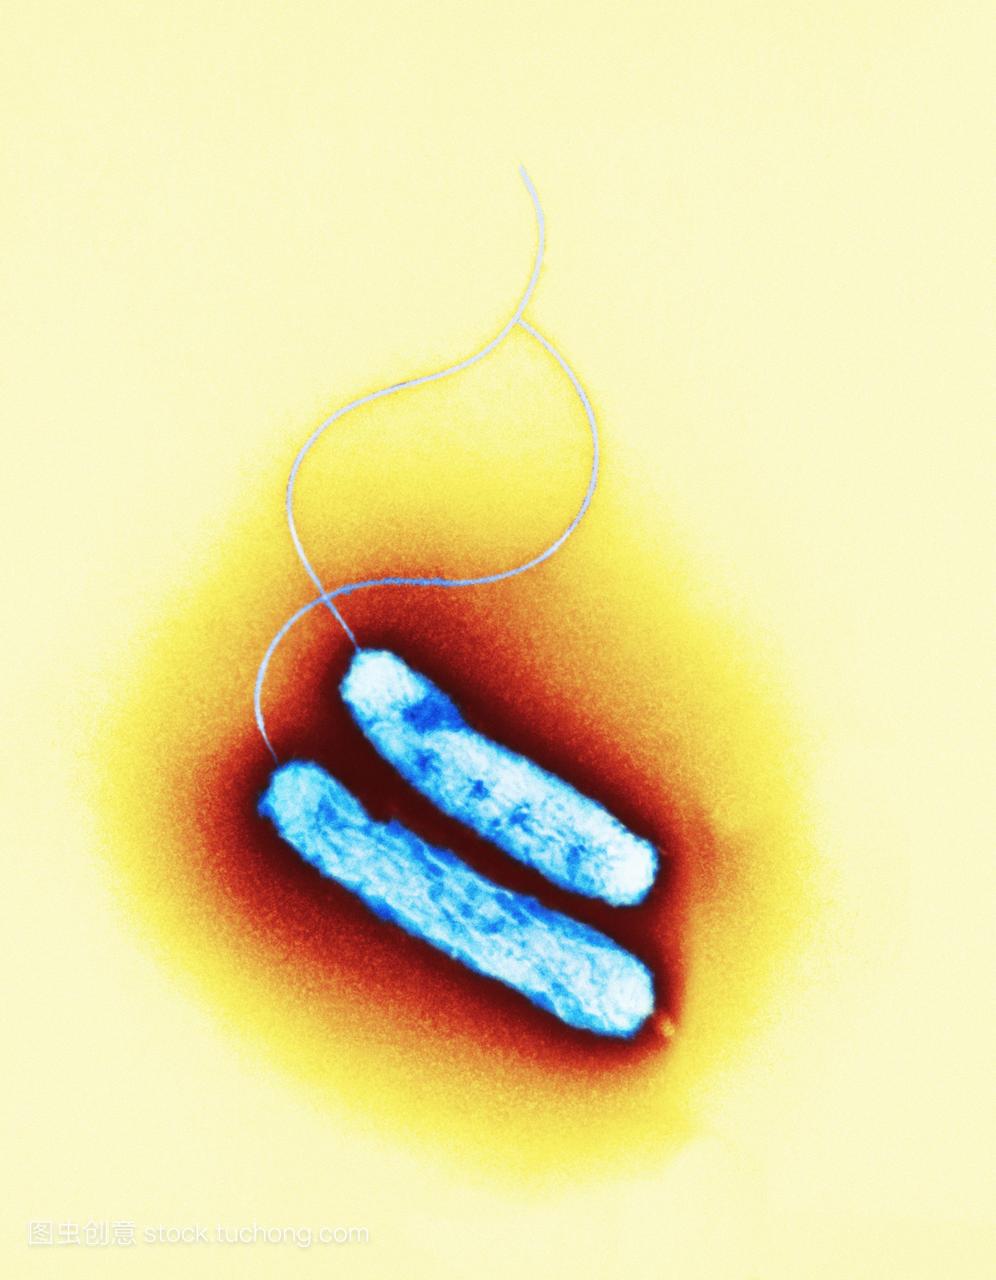 弯曲杆菌的细菌。彩色透射电子显微镜TEM两